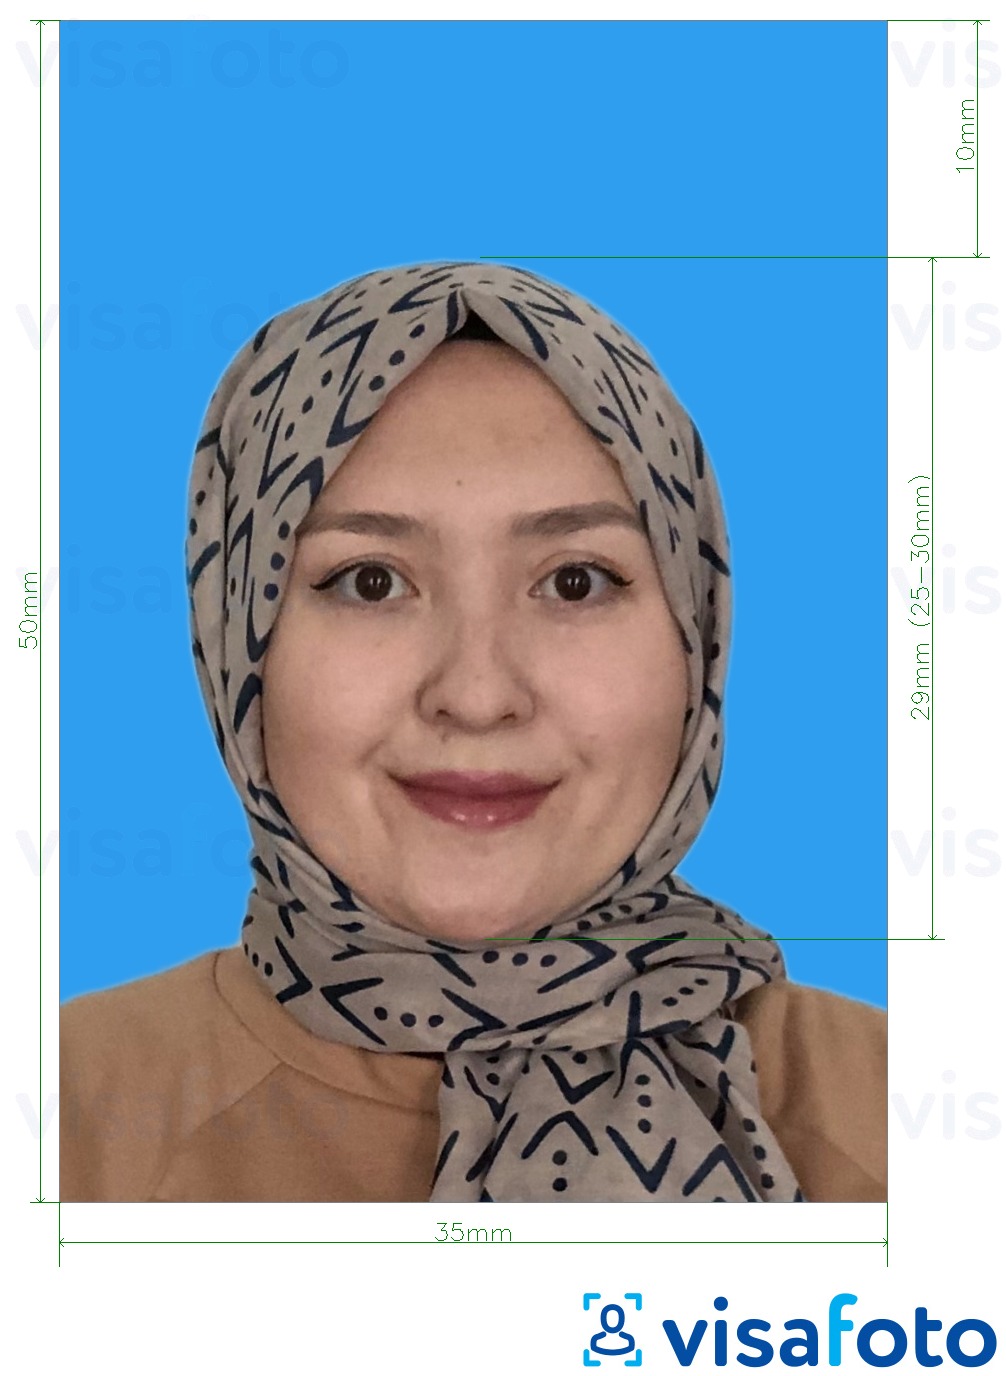 نمونه ی یک عکس برای پاسپورت مالزی پس زمینه آبی 35 x 50 میلیمتر با مشخصات دقیق